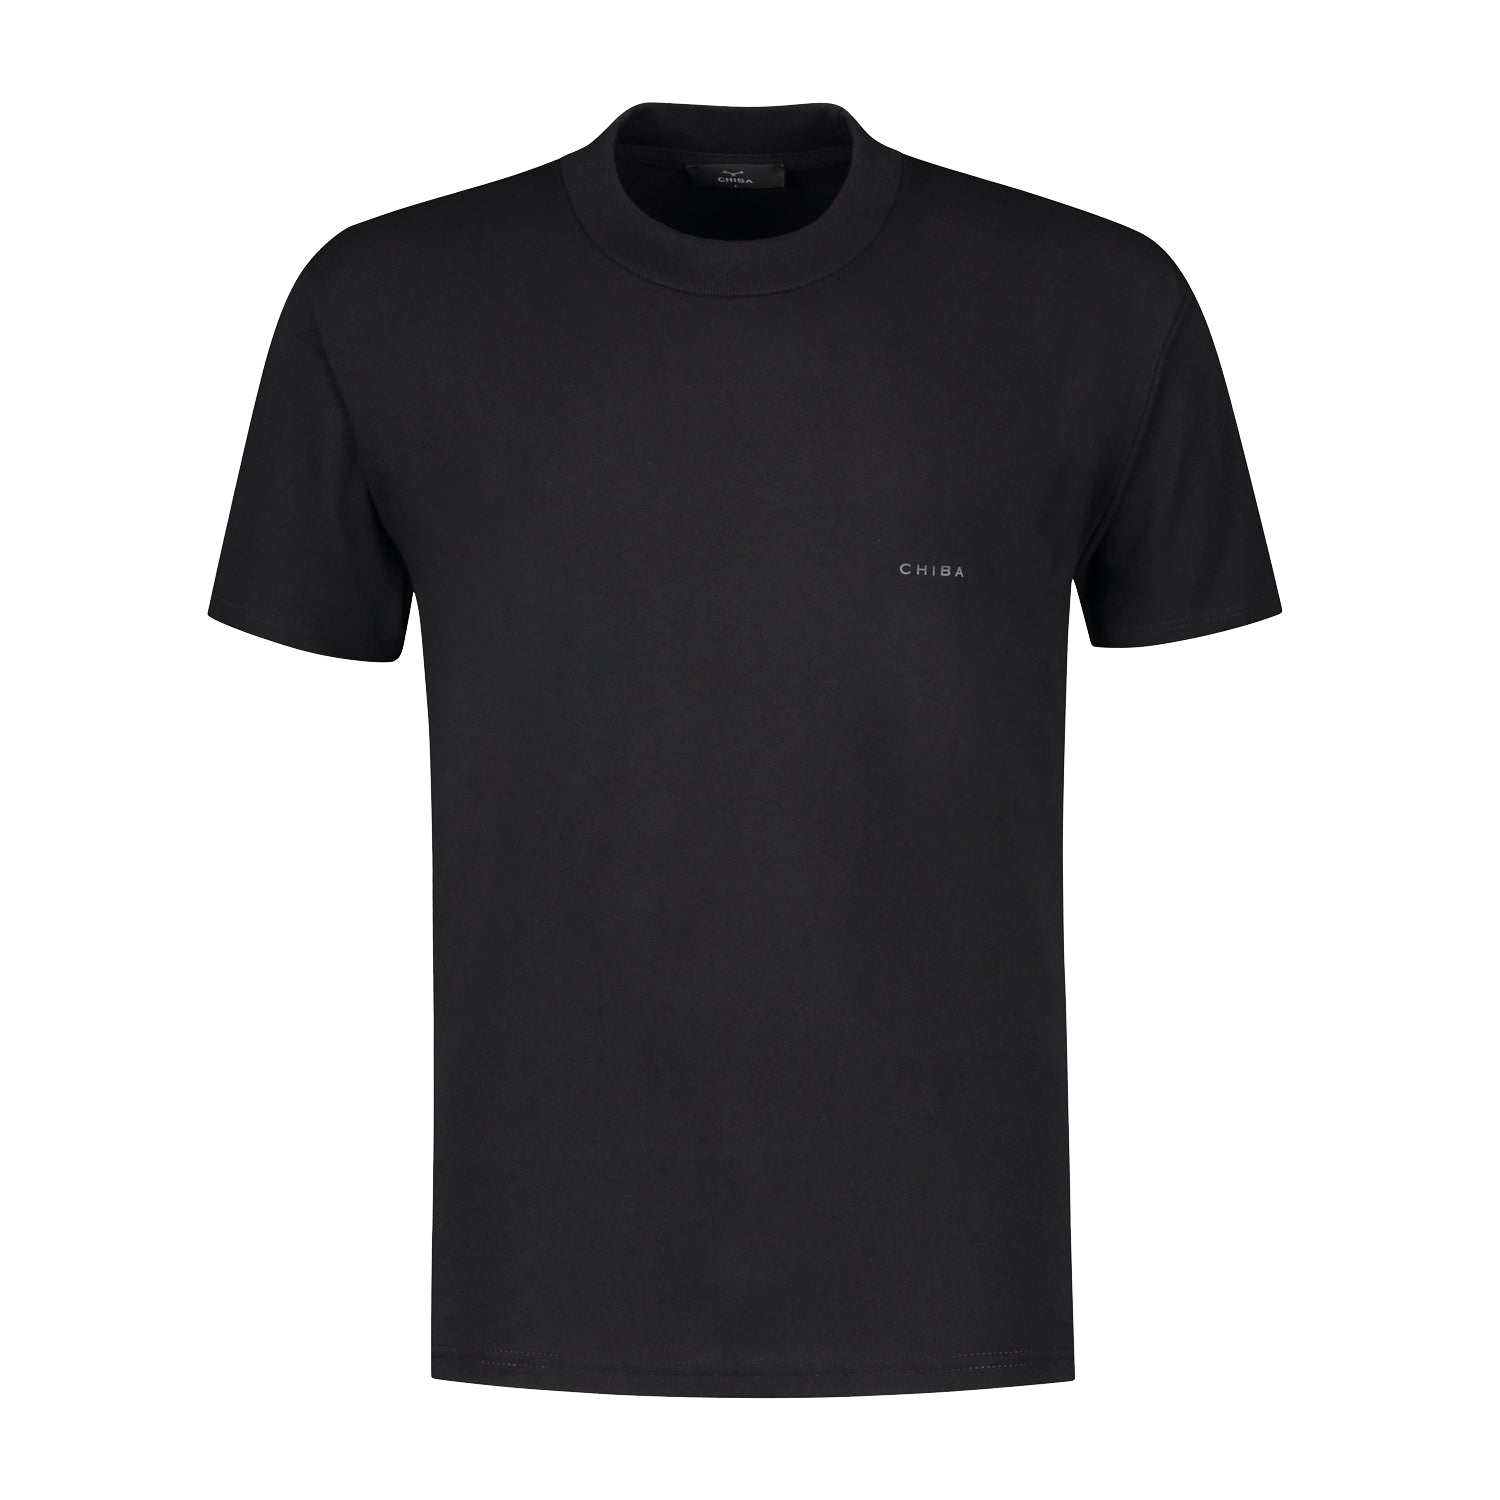 Essential T-Shirt - Black